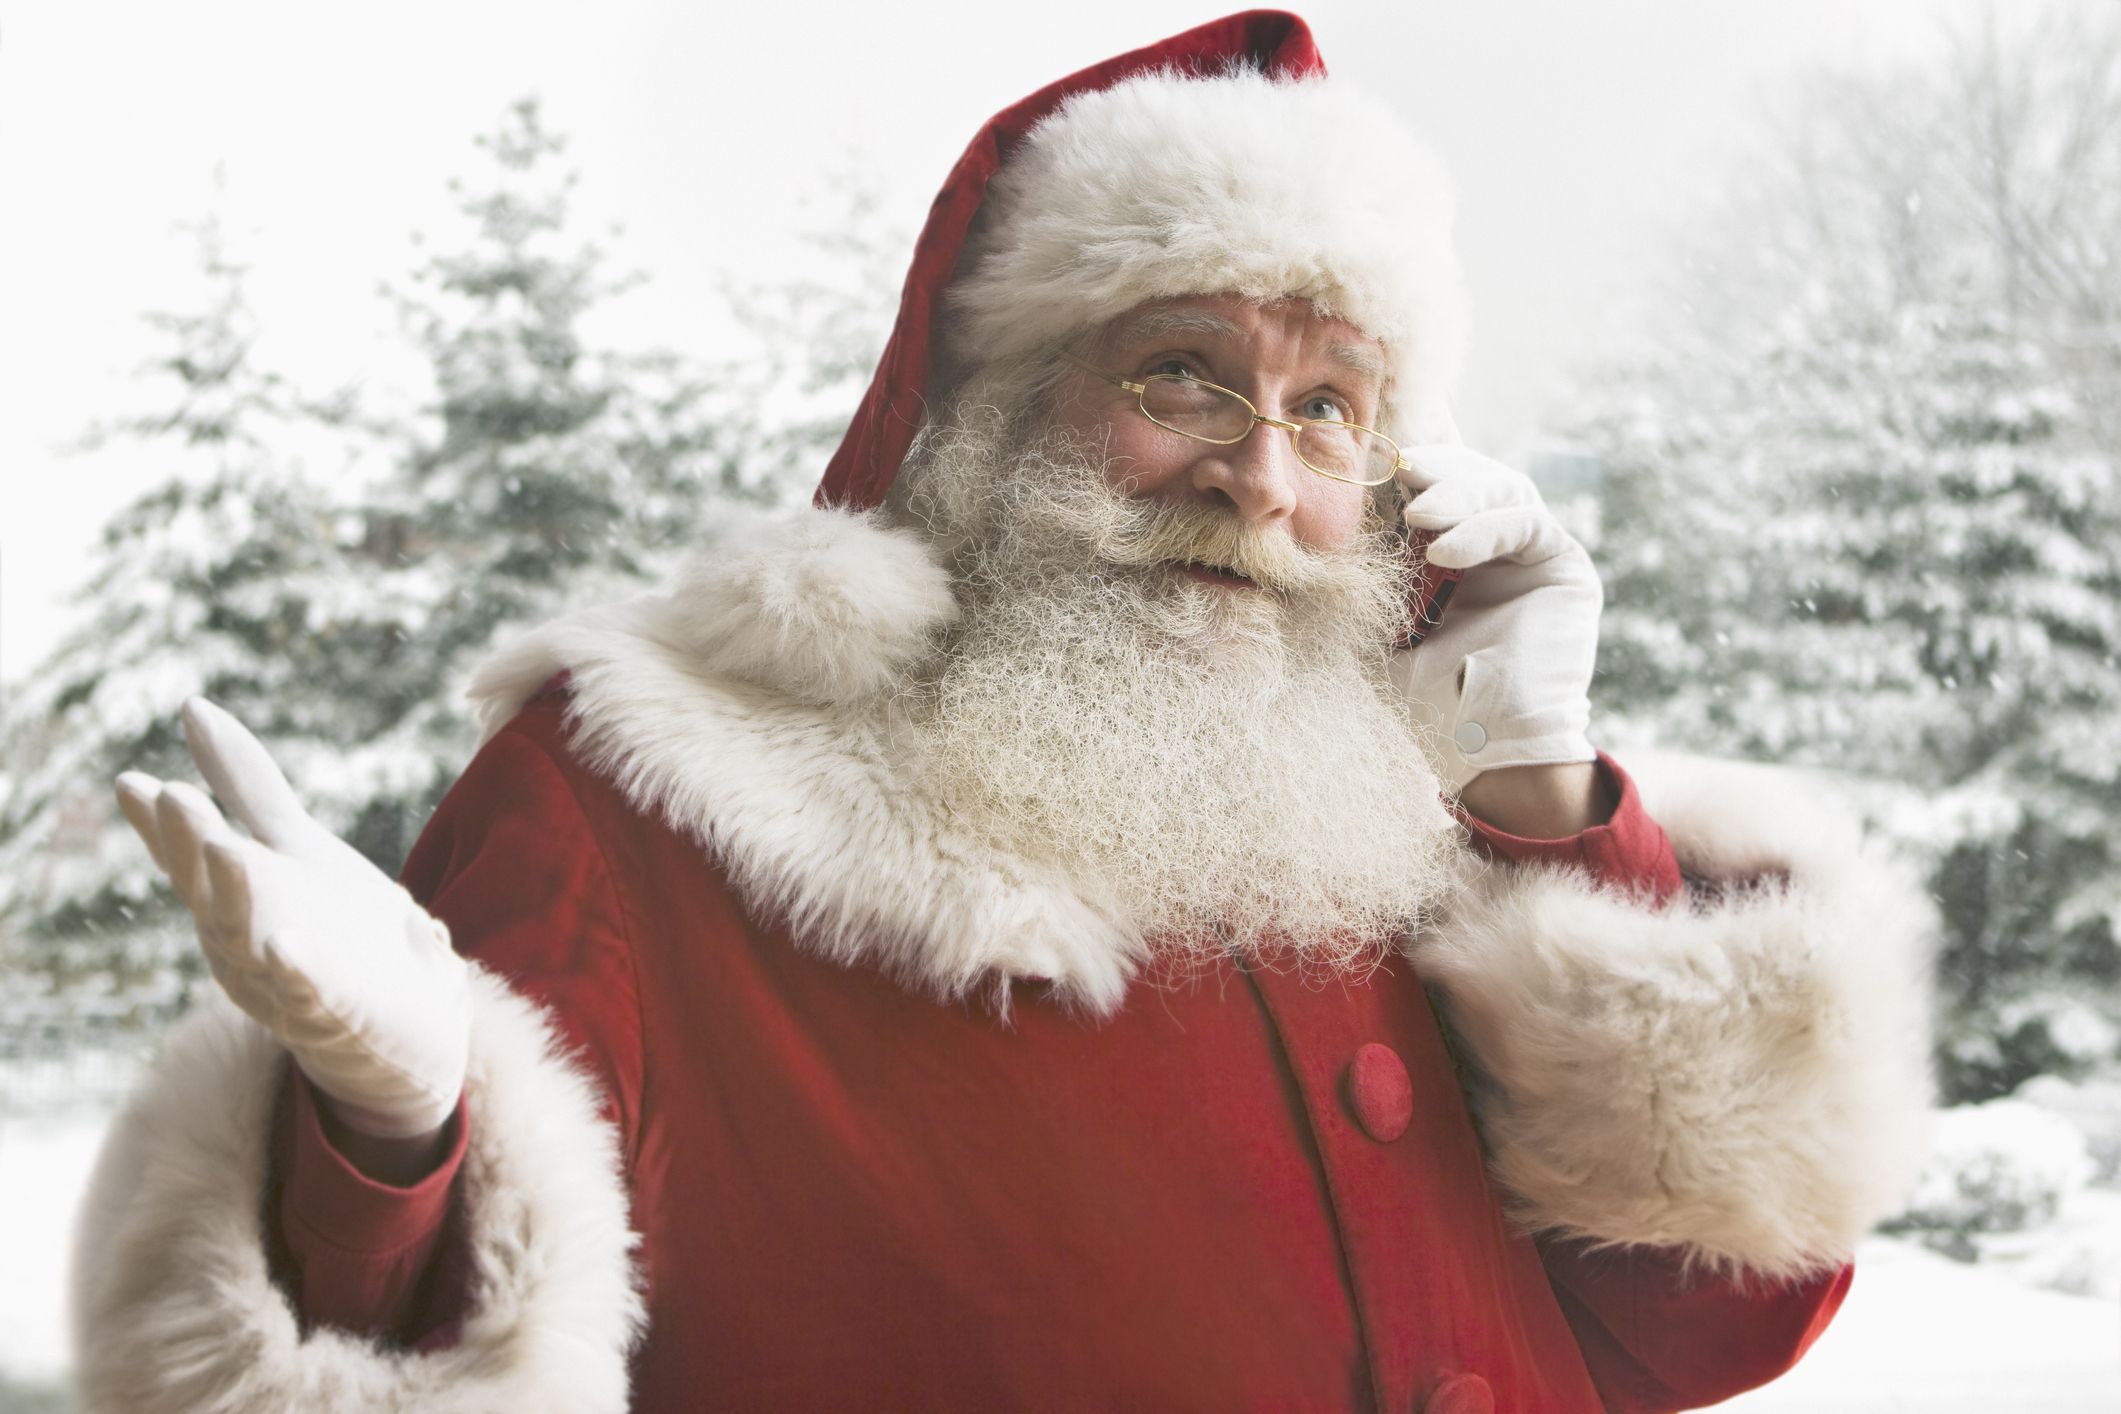 Christmas Card - Naughty List - Santa Claus - Father Christmas